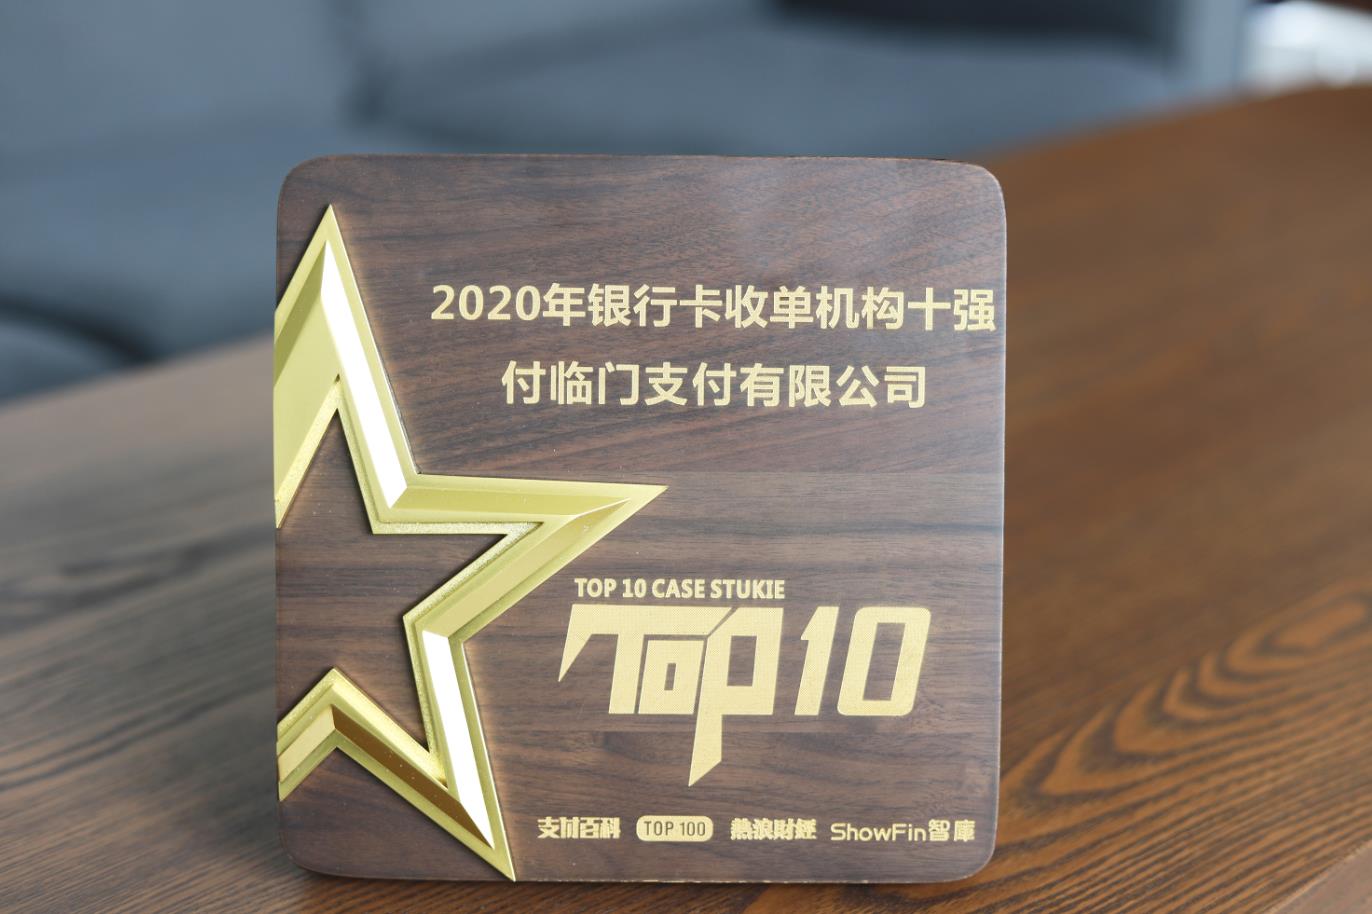 再添新辉〡付临门强势跻身2020年银行卡收单榜TOP20